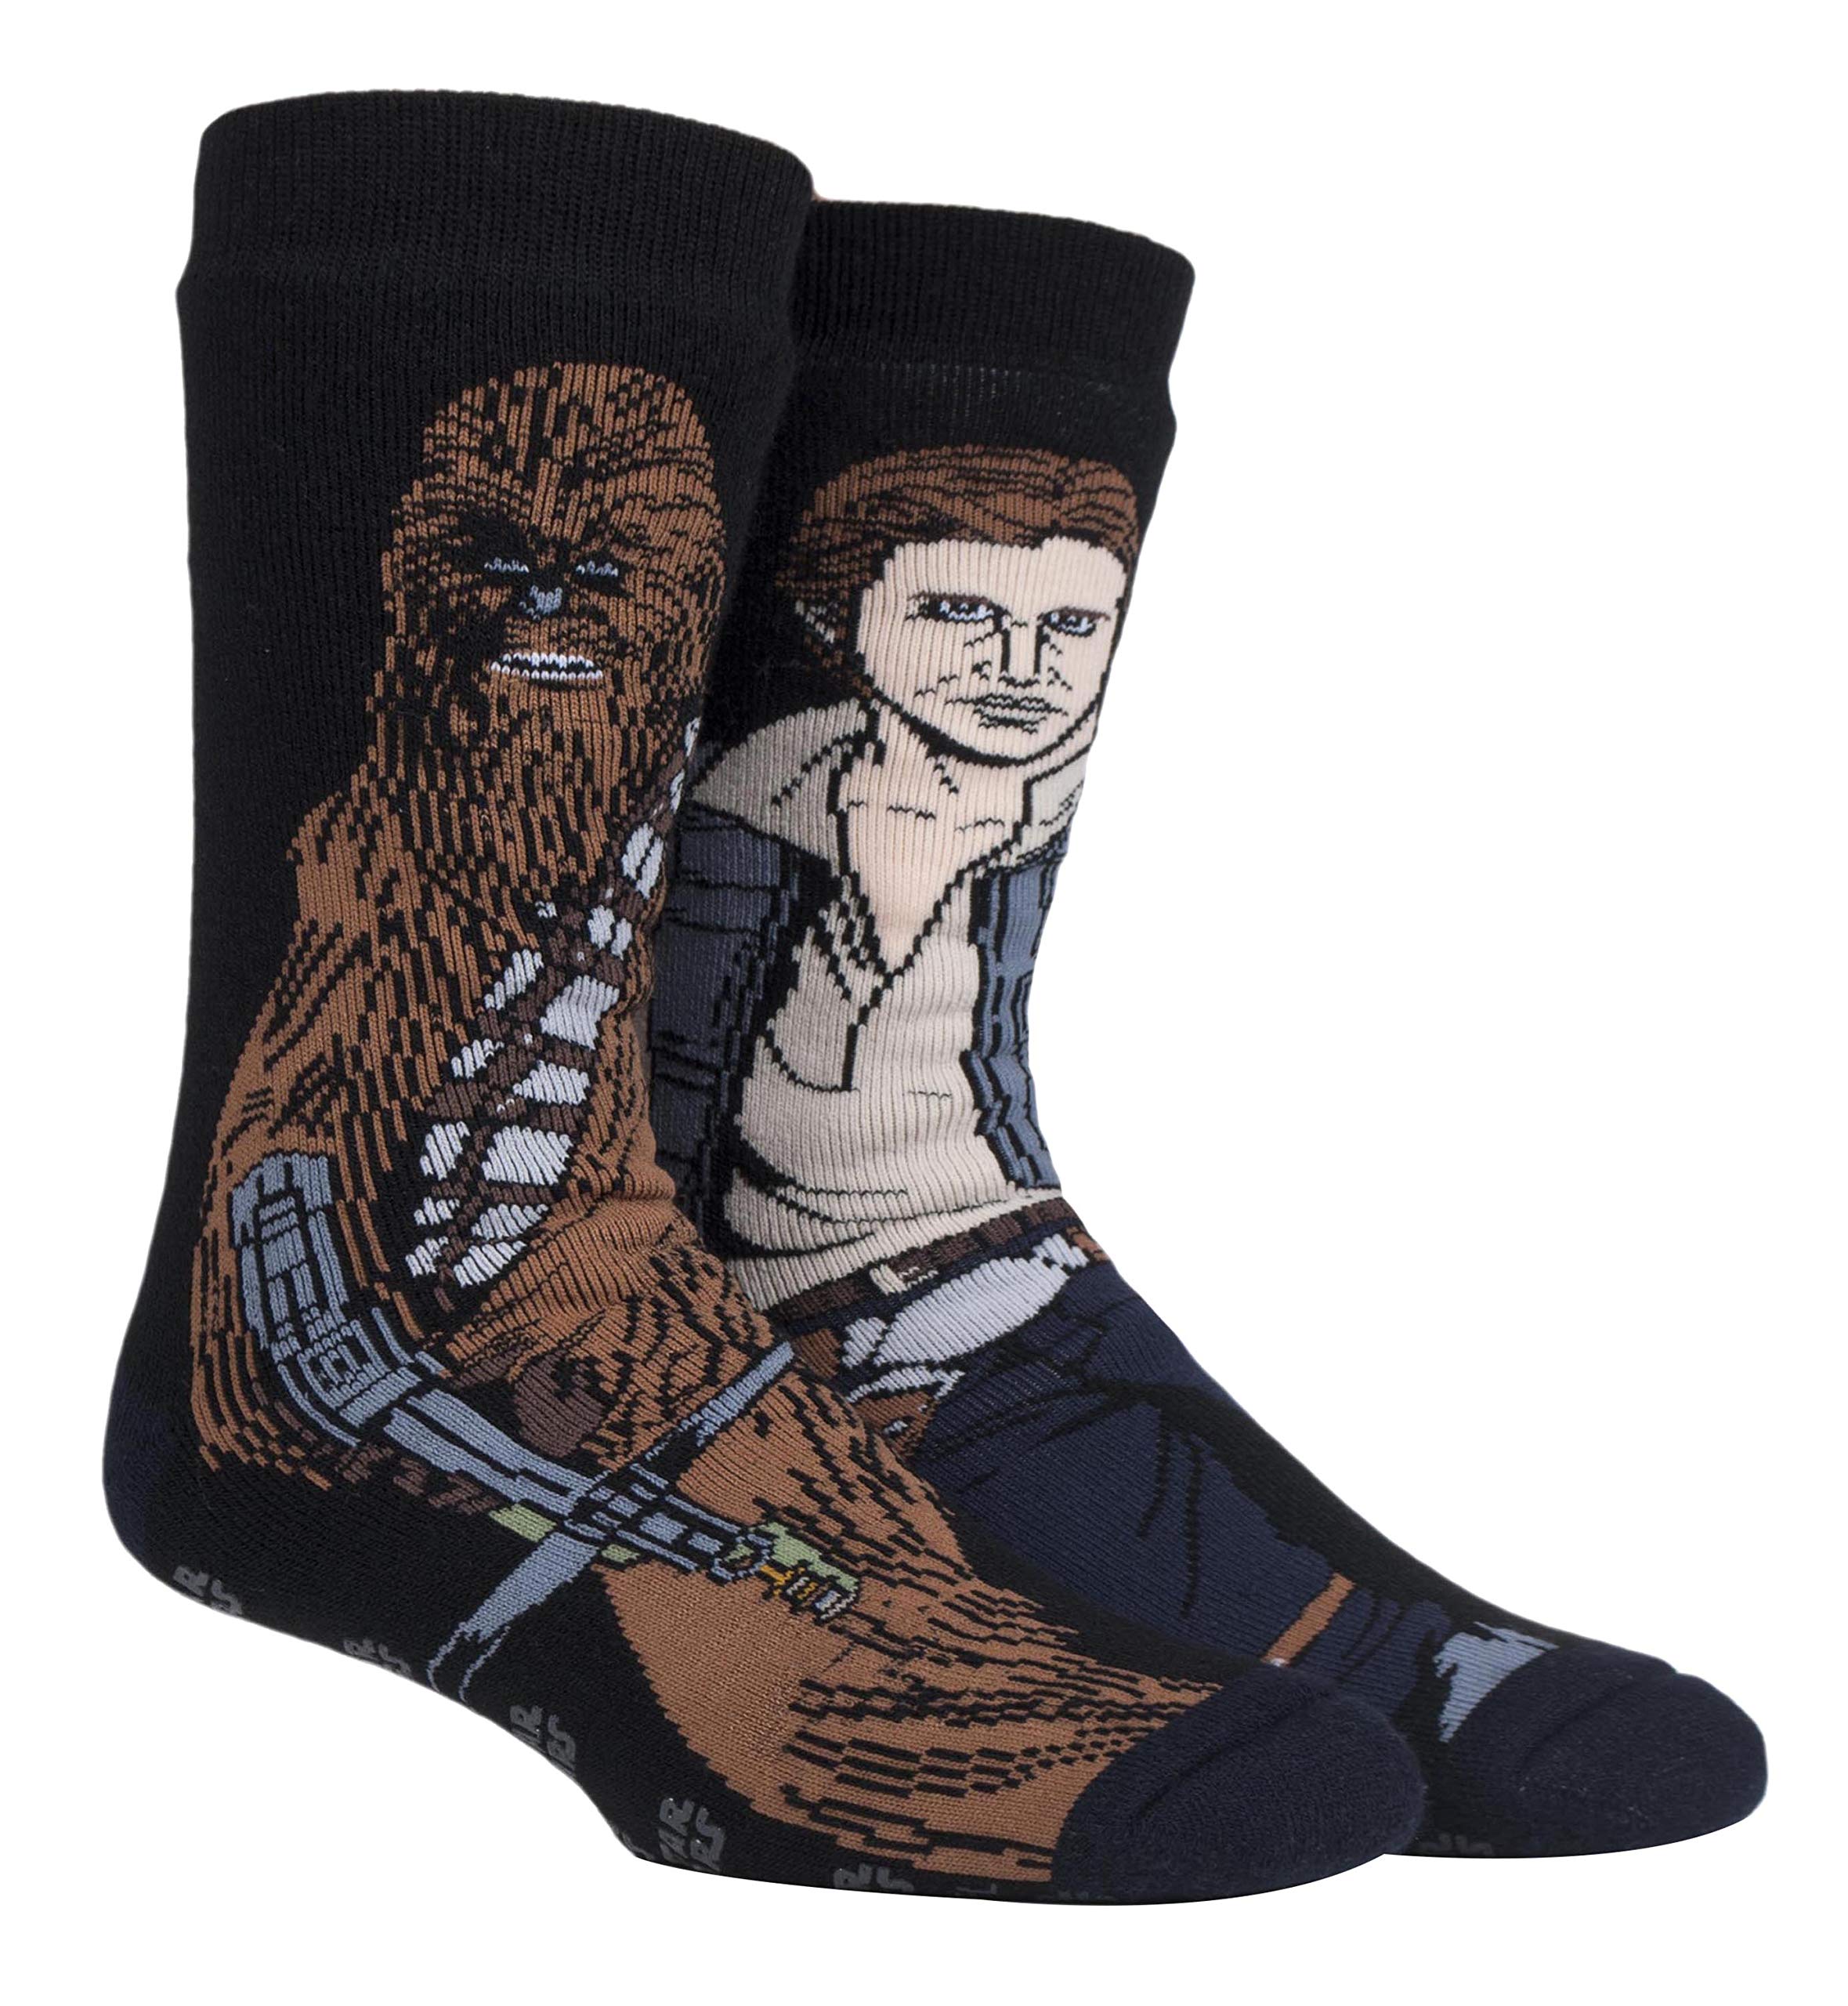 HEAT HOLDERS - Herren Thermo Winter Star Wars Socken mit Antirutsch ABS Sohle (39/45, Han Solo/Chewbacca)